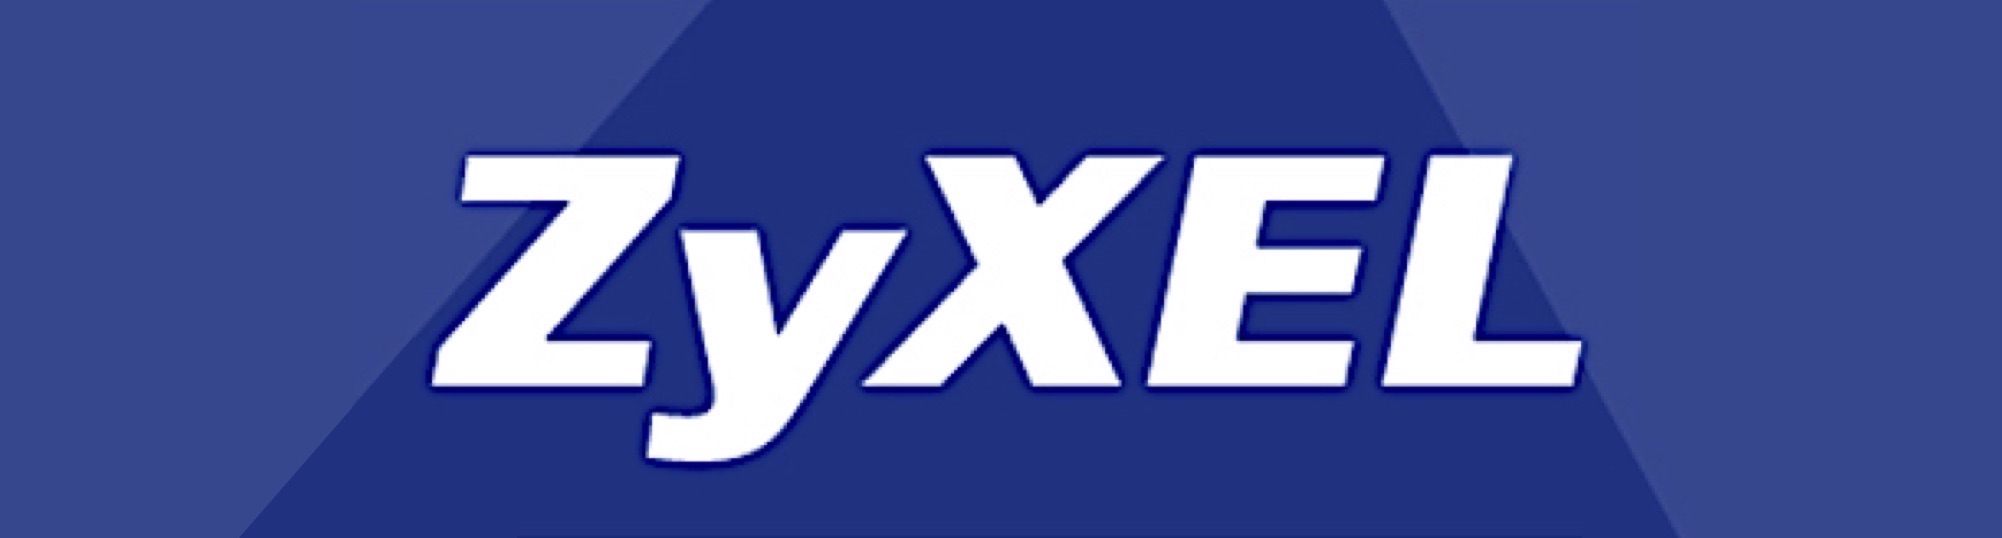 Trebbo: ZyXel product nieuws